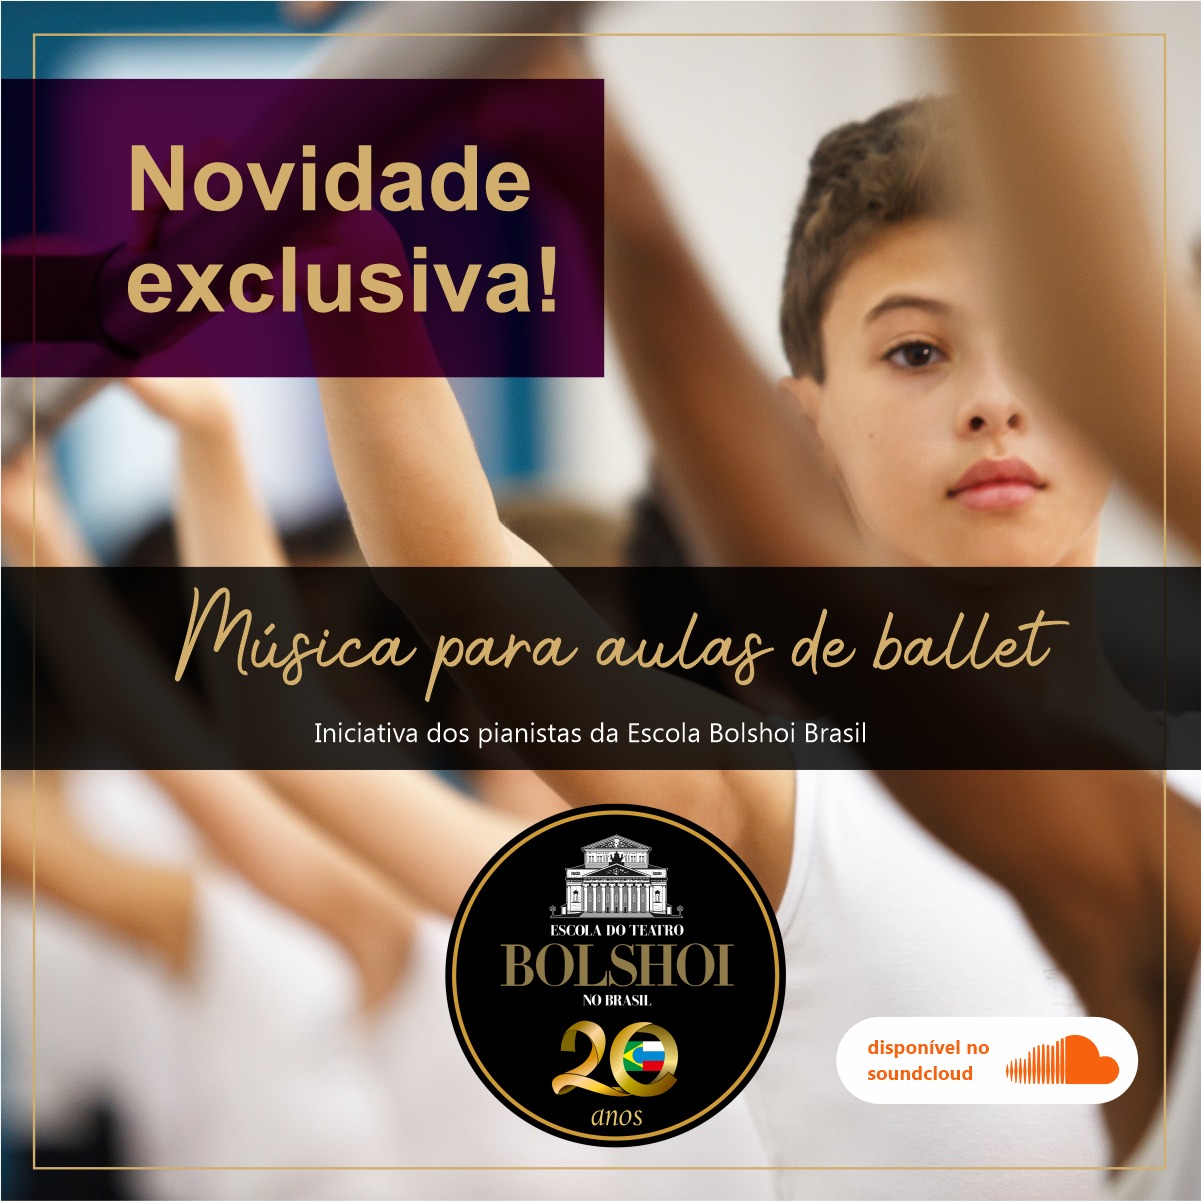 Bolshoi Brasil disponibliza playlist com músicas de balé